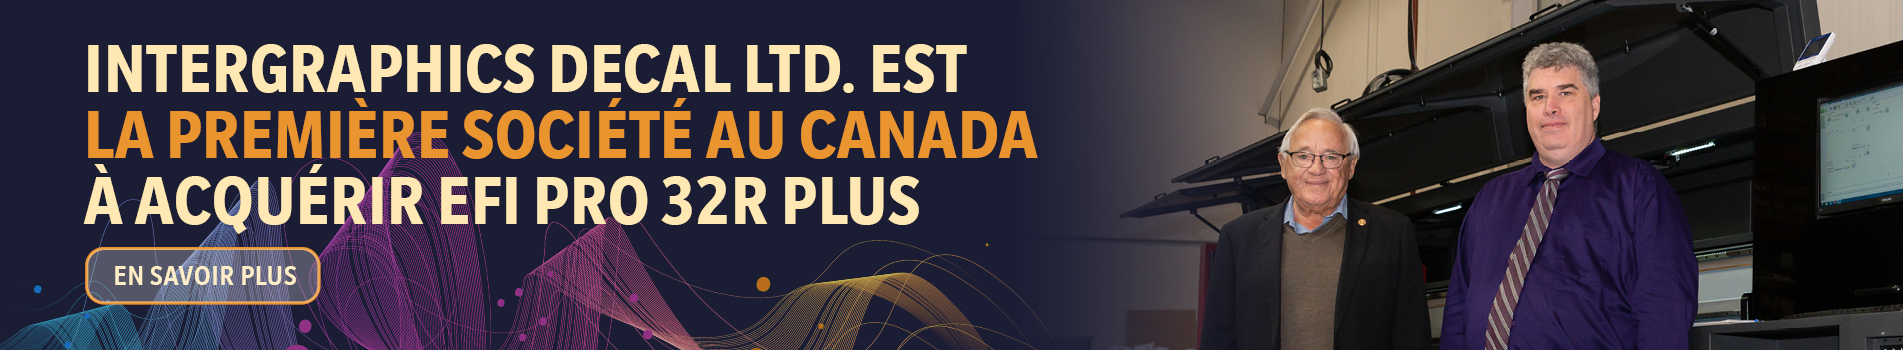 Intergraphics Decal Ltd. est la première société au Canada à acquérir EFI Pro 32r Plus